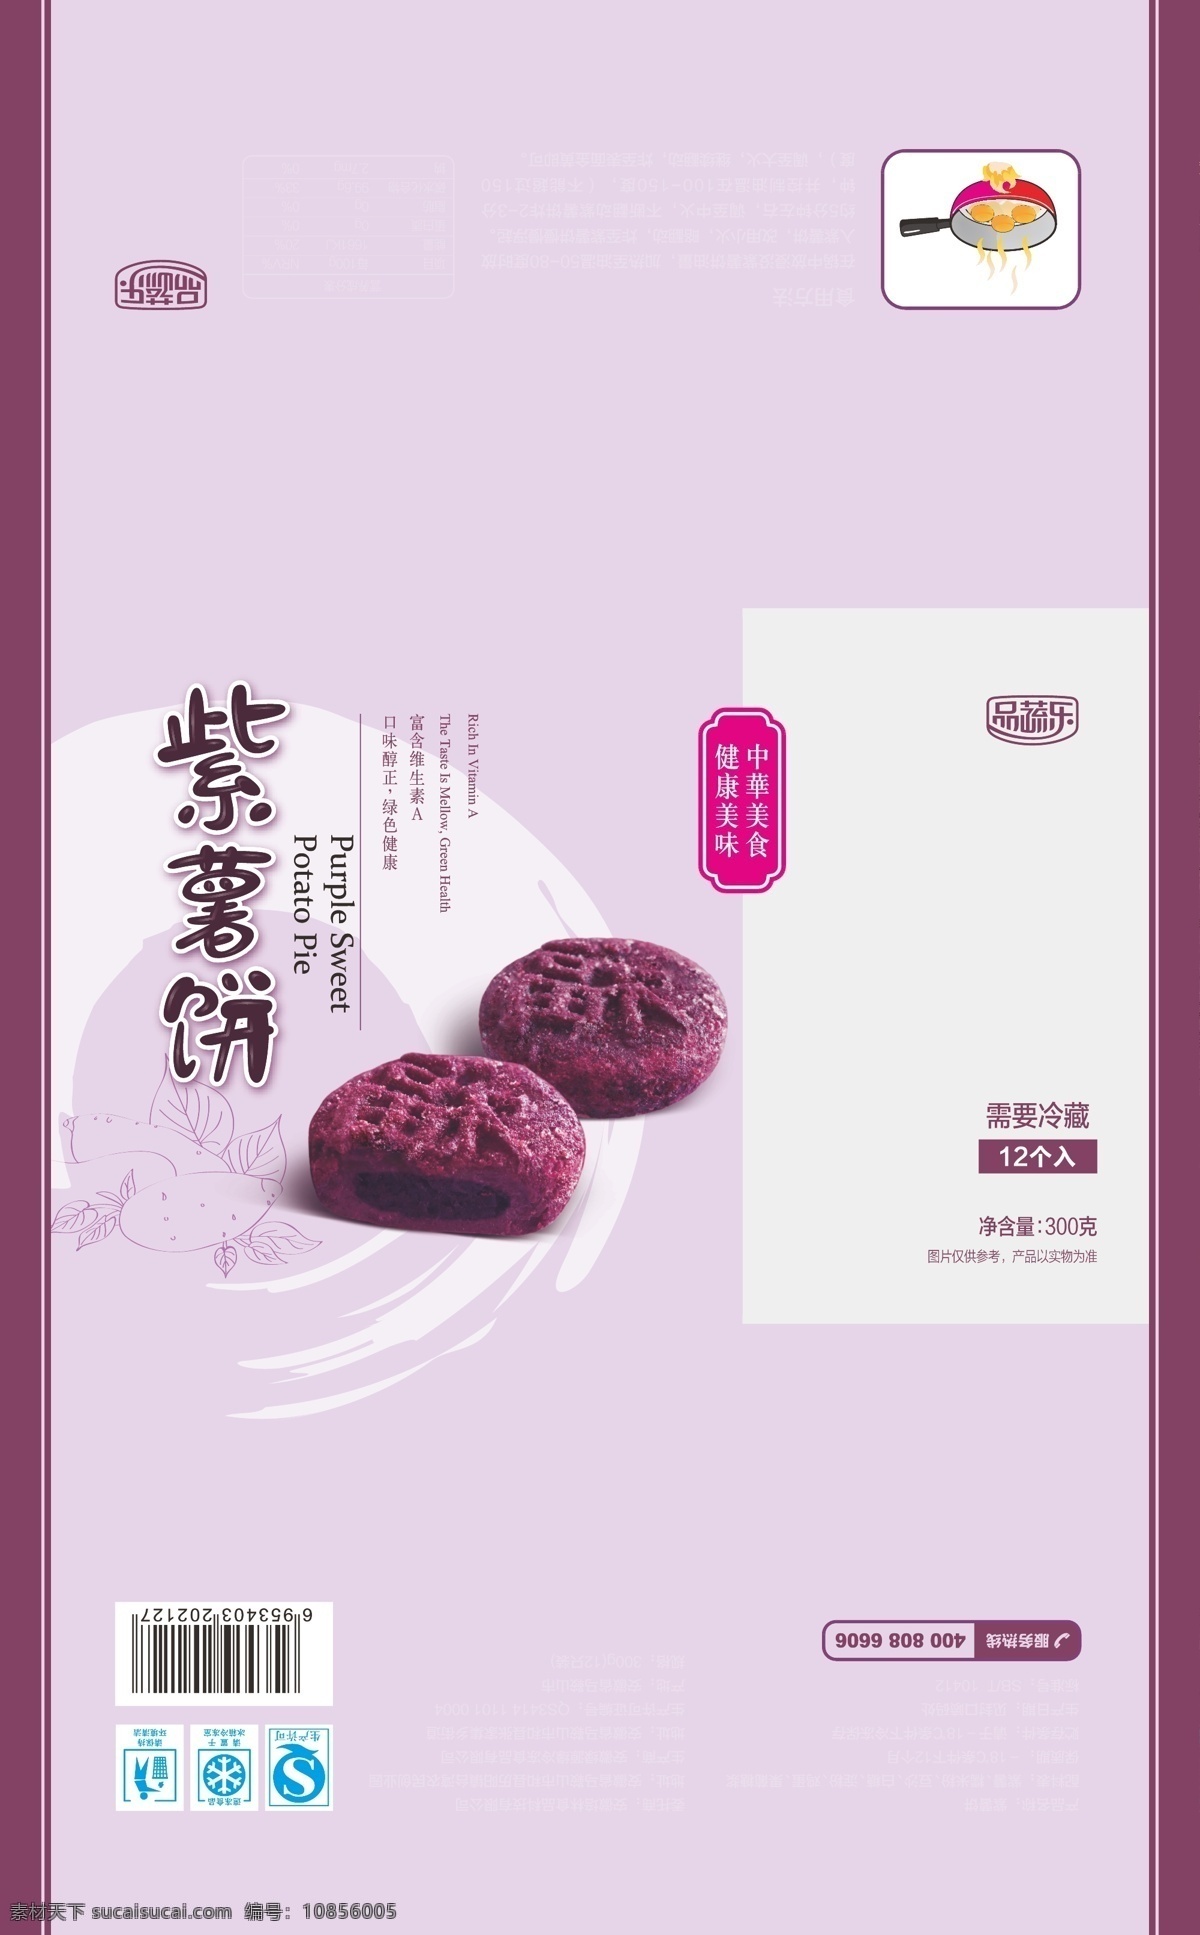 紫薯饼 南瓜饼包装 南瓜饼 粑 饼 紫薯 南瓜 包装设计 紫色 桔色 包装袋 冷冻食品 矢量